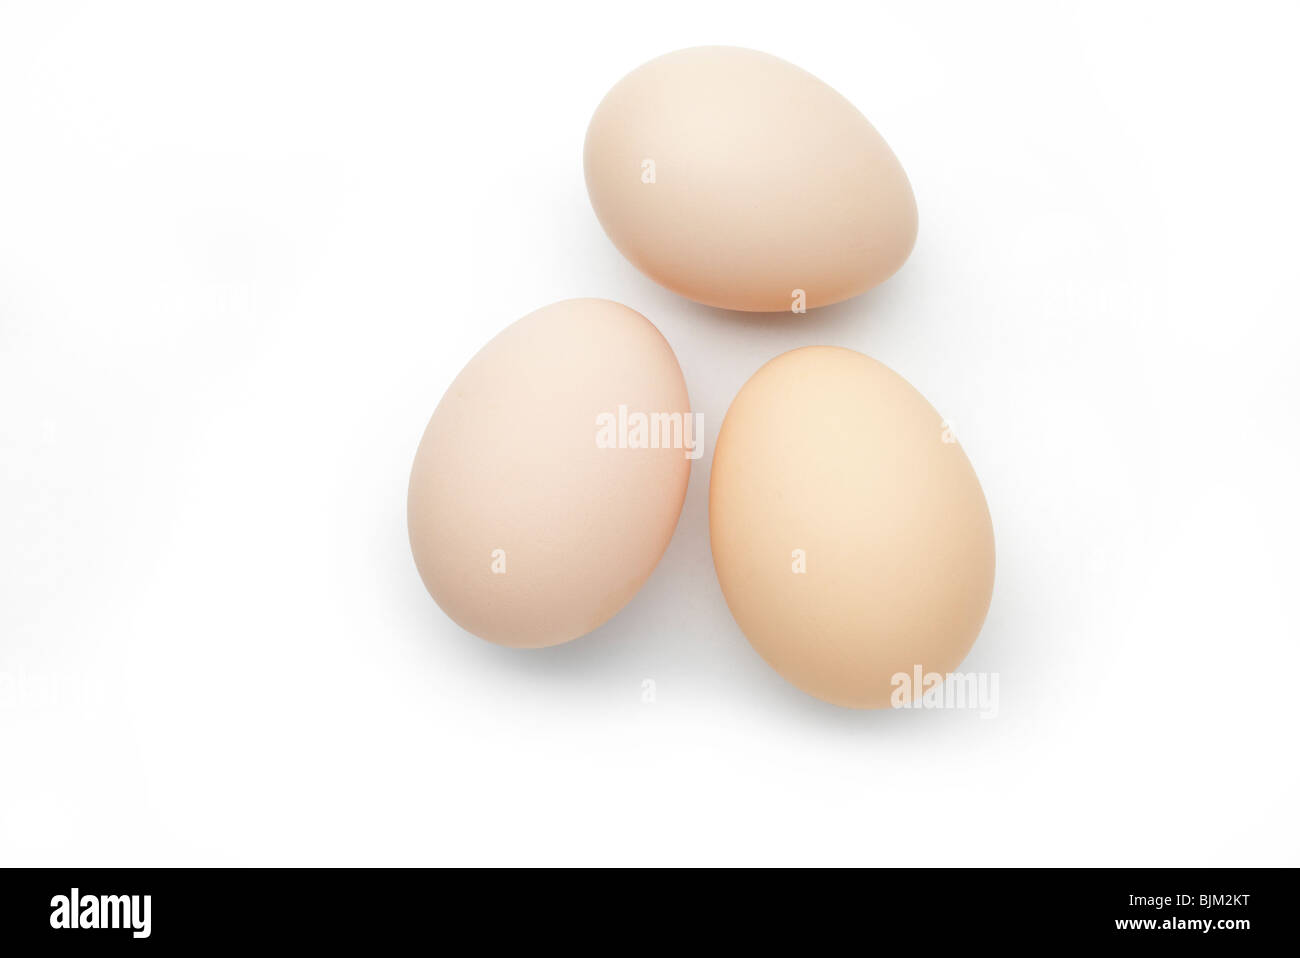 3 huevos de gallinas recién sembradas sobre fondo blanco. Foto de stock